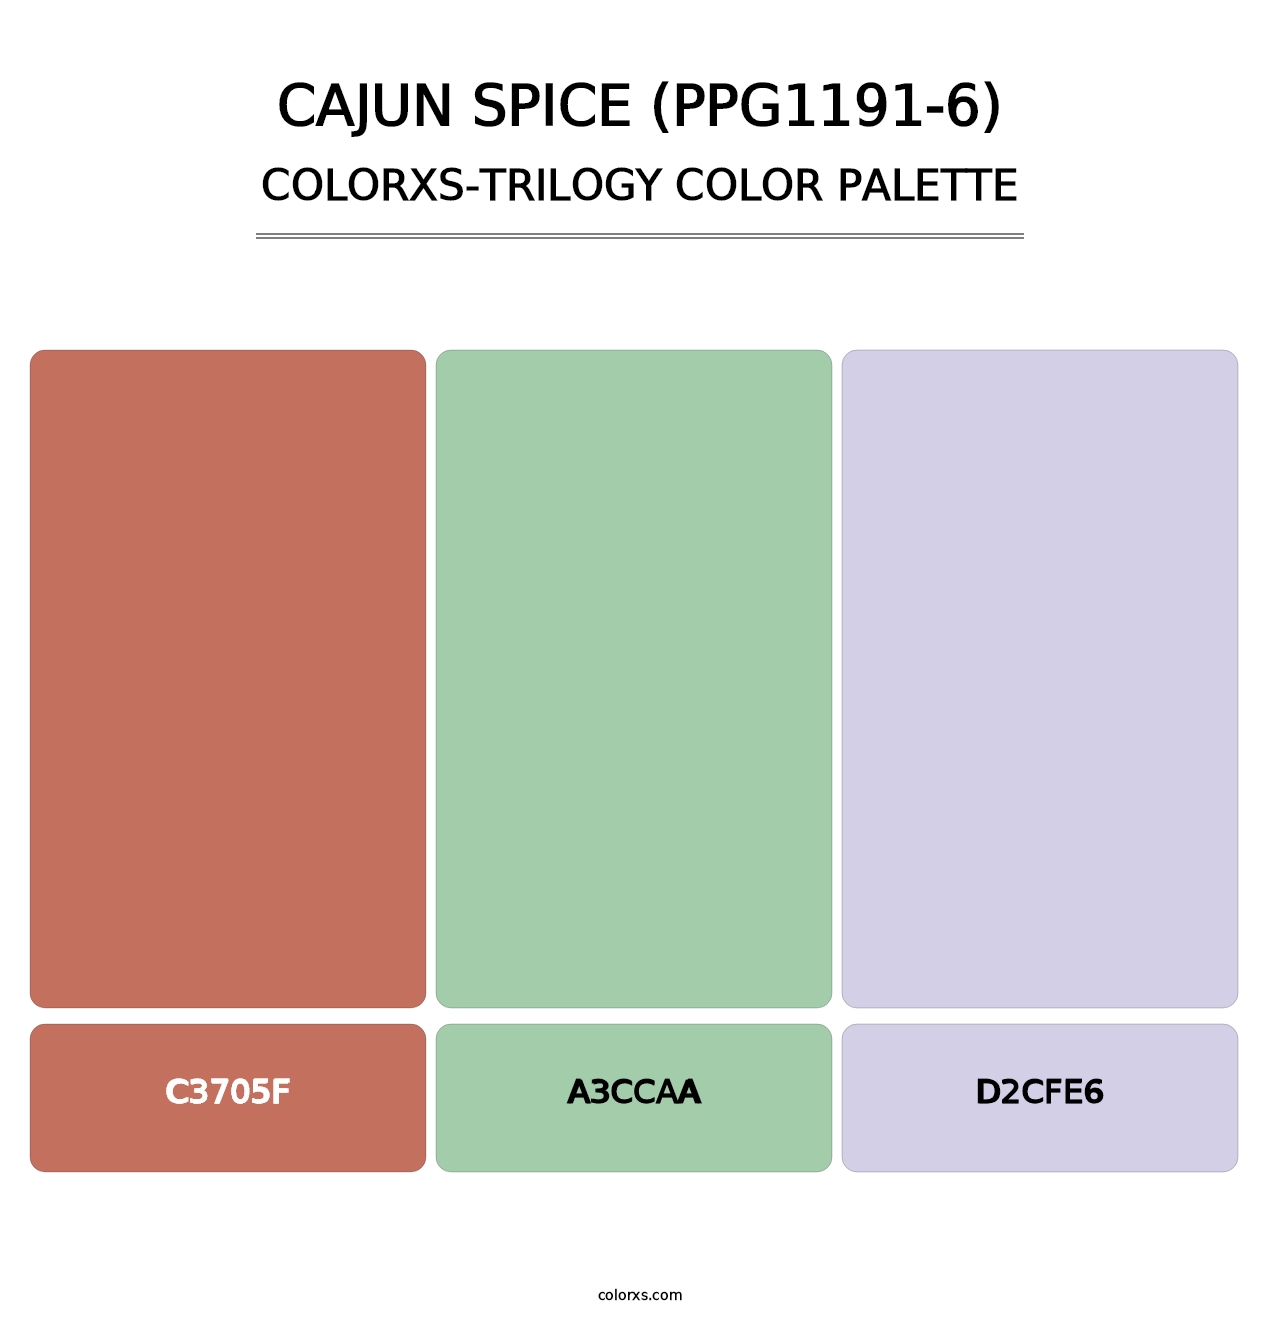 Cajun Spice (PPG1191-6) - Colorxs Trilogy Palette